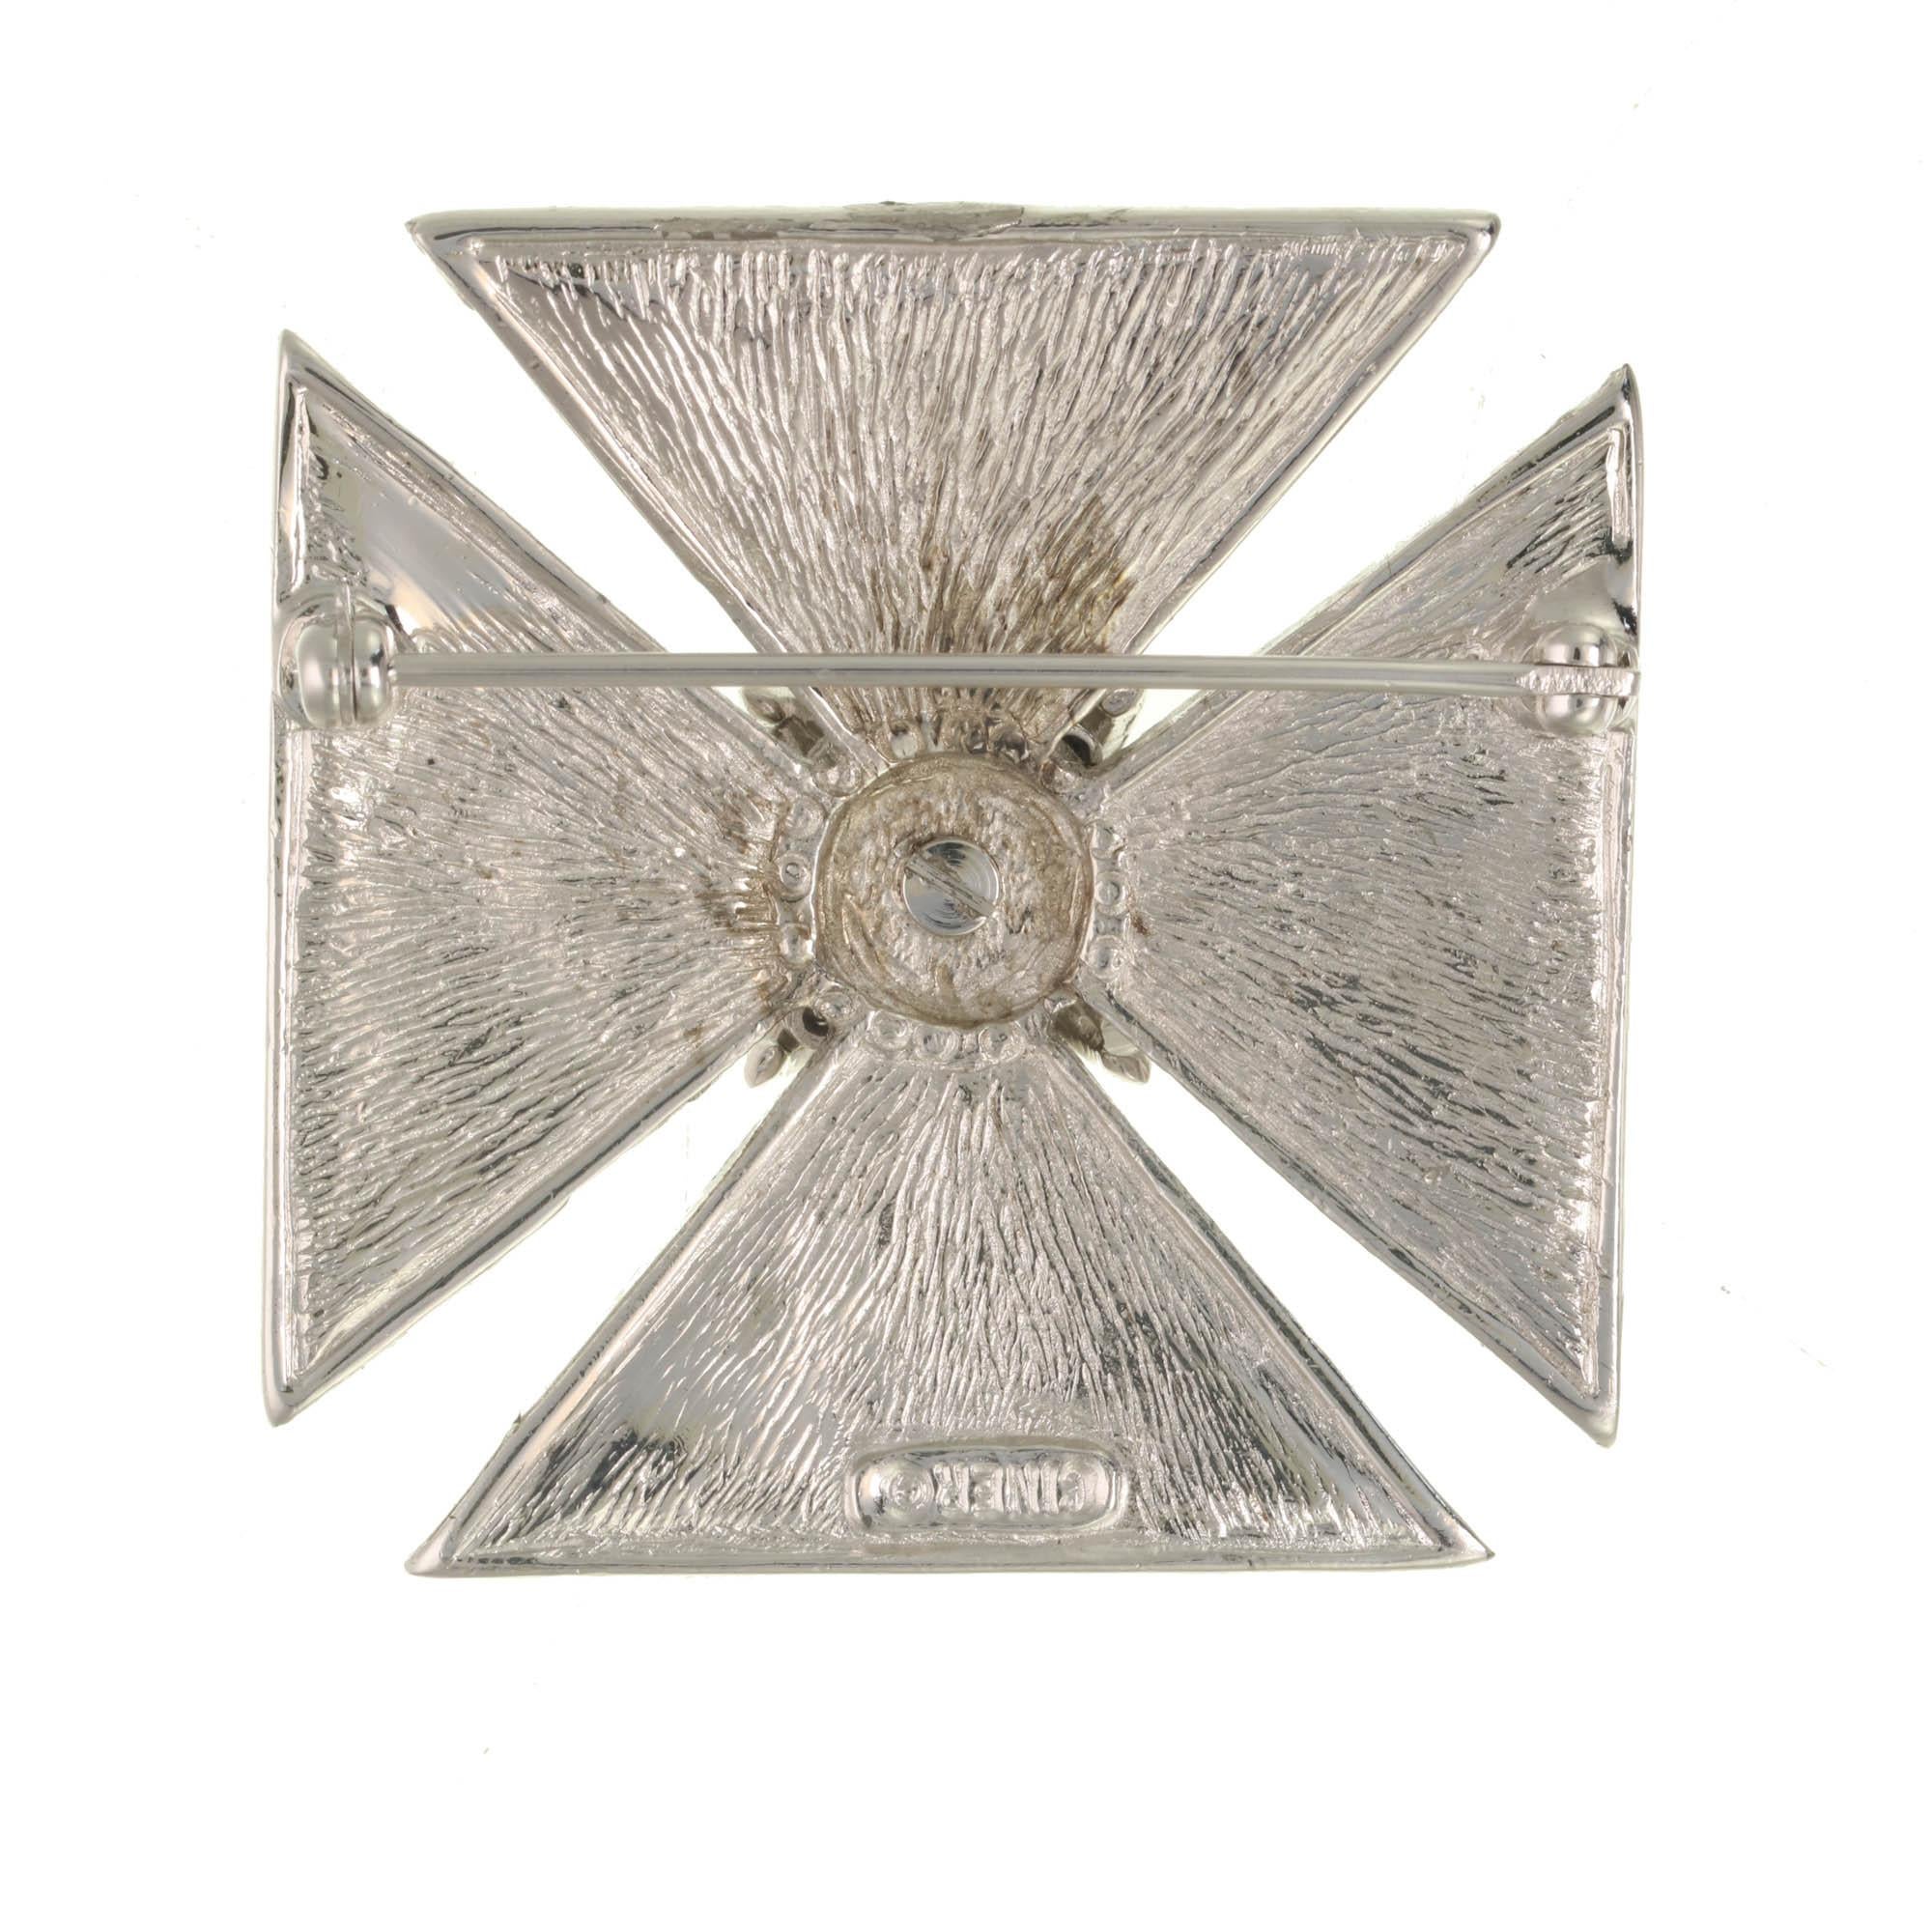 Cette croix de Malte incrustée de cristaux est l'accessoire parfait pour apporter une touche de glamour à votre manteau d'hiver préféré. 

VEUILLEZ NOTER : Les pièces disponibles ne sont pas vintage et ne sont pas des reproductions.
CINER utilise